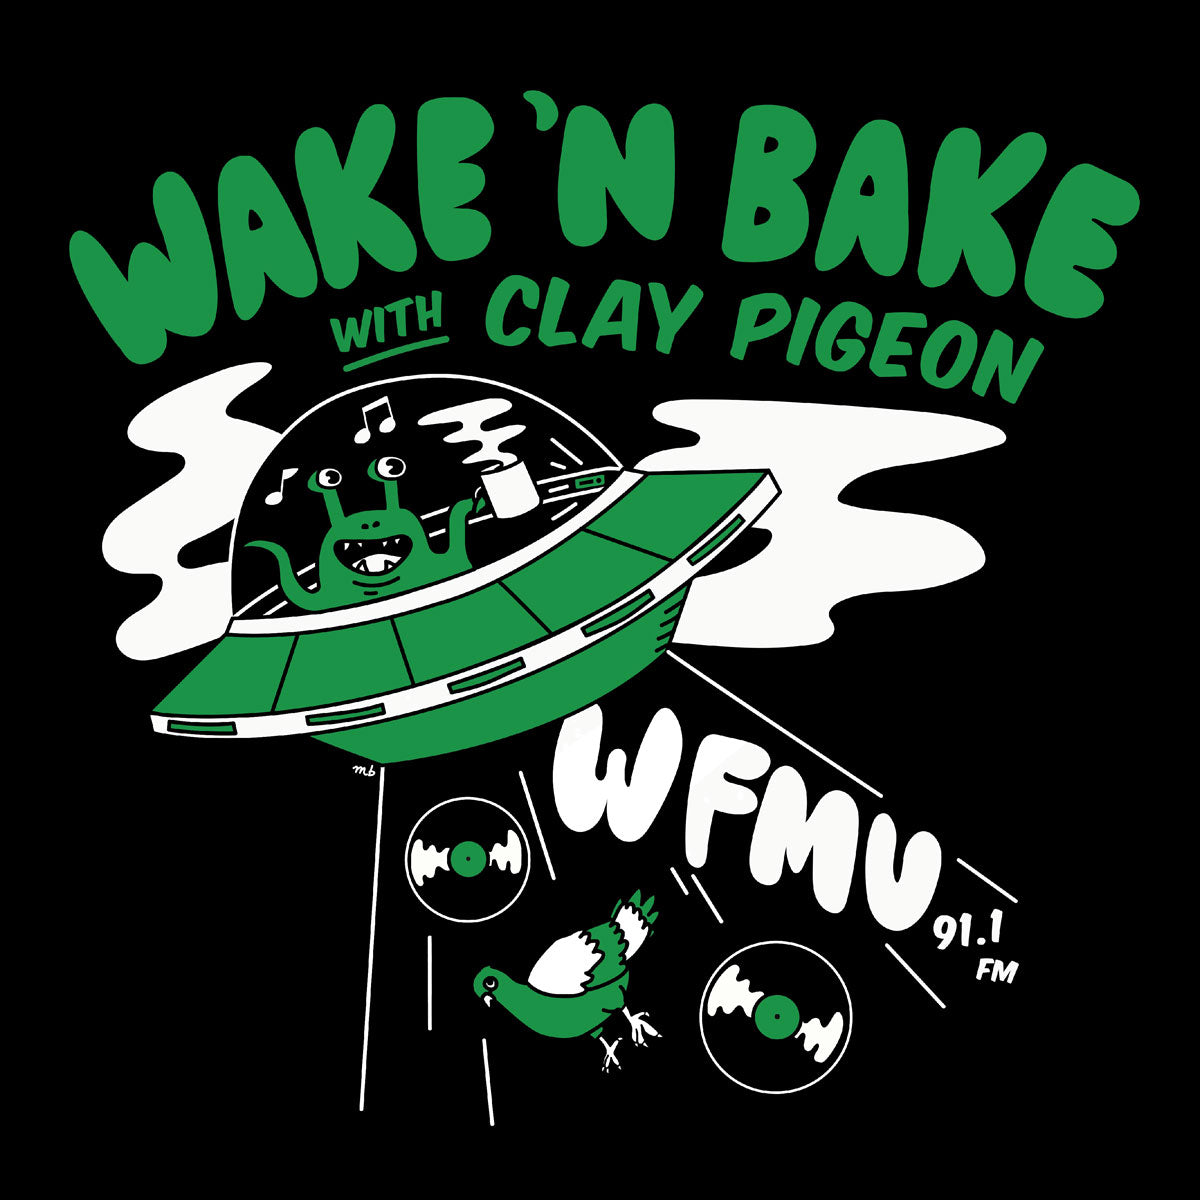 Wake UFO T-Shirt